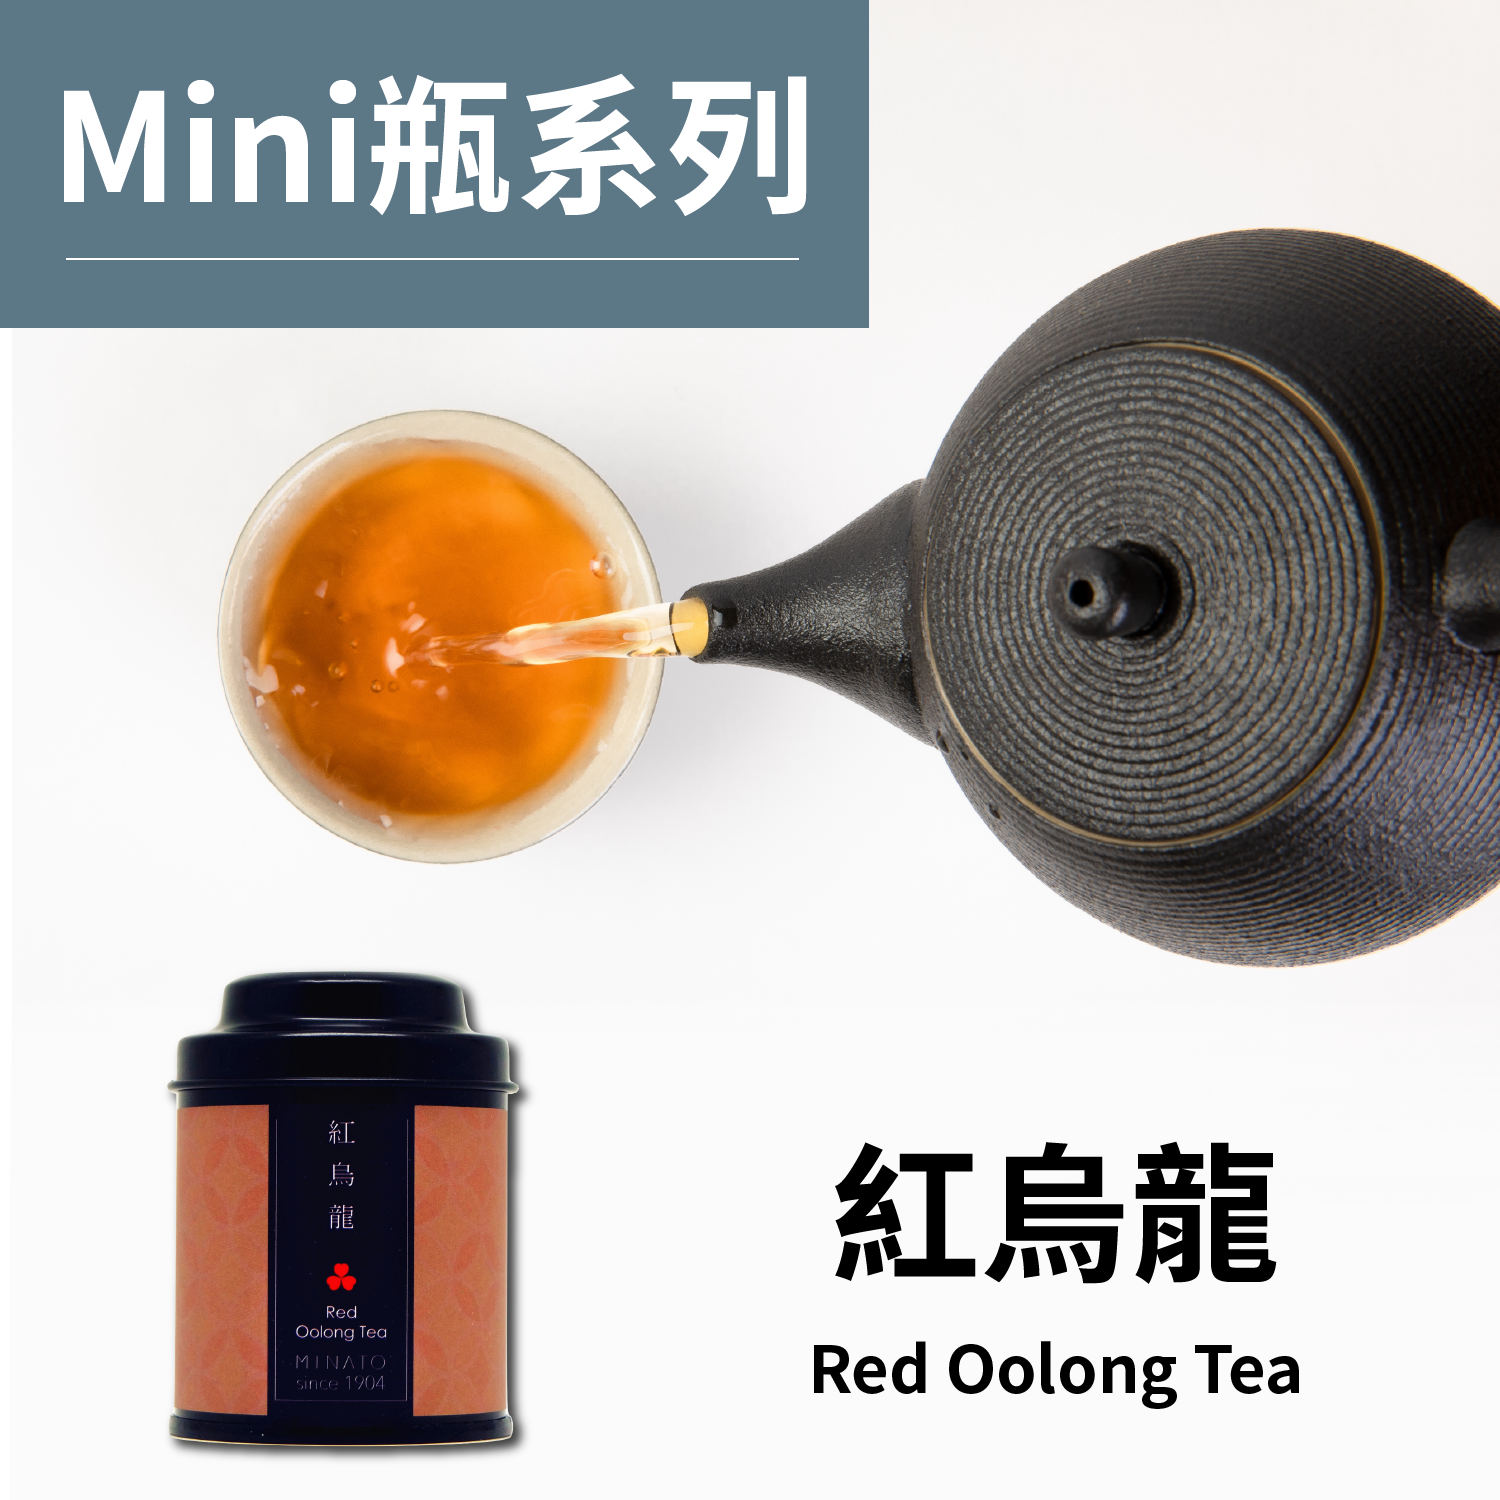 茶粒茶 原片茶葉 Mini黑罐-紅烏龍茶 30g